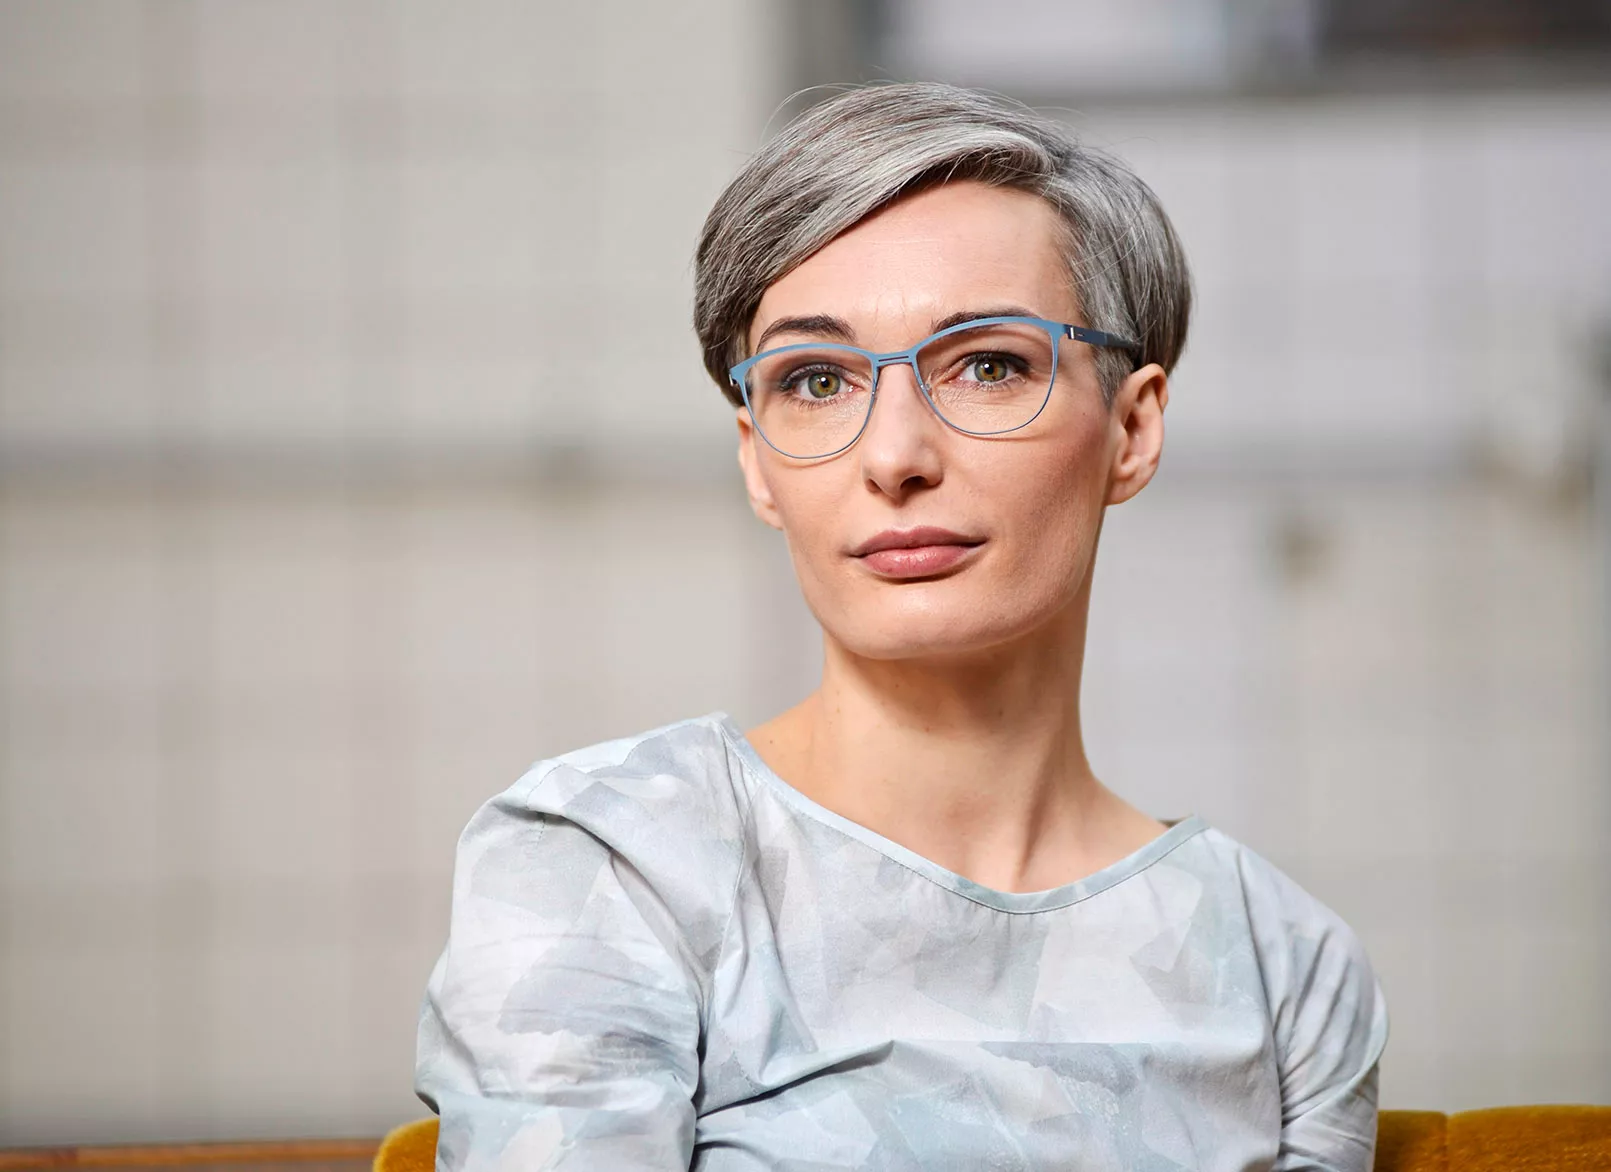 Junge Frau mit grauen kurzen Haaren und einer modernen Brille, die in die Kamera schaut